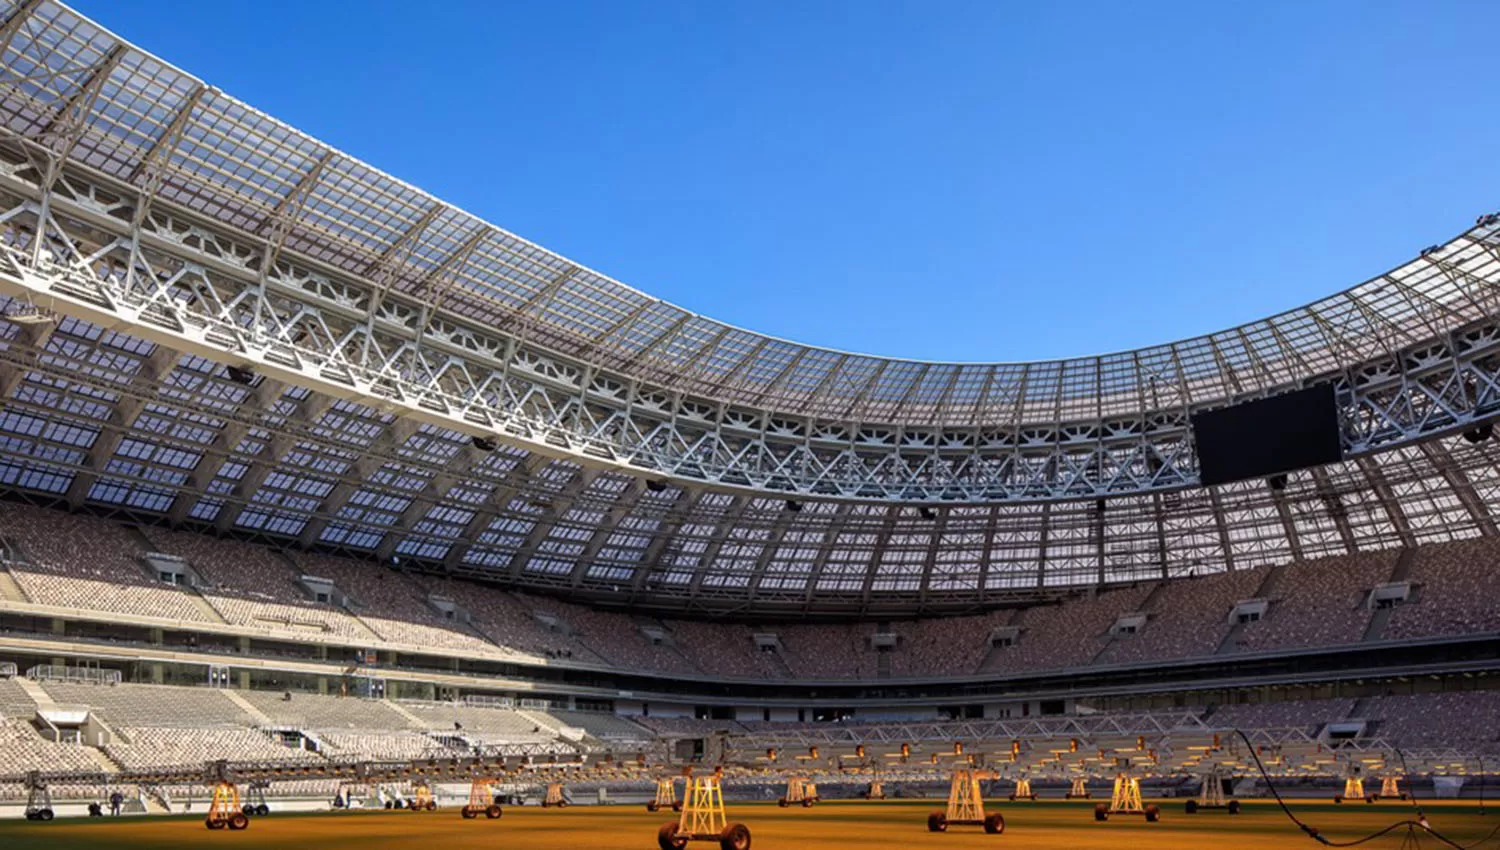 El estadio Luzhniki será uno de los principales del Mundial. Allí se jugarán el partido inaugural y la final.
FOTO TOMADA DE FIFA.ES